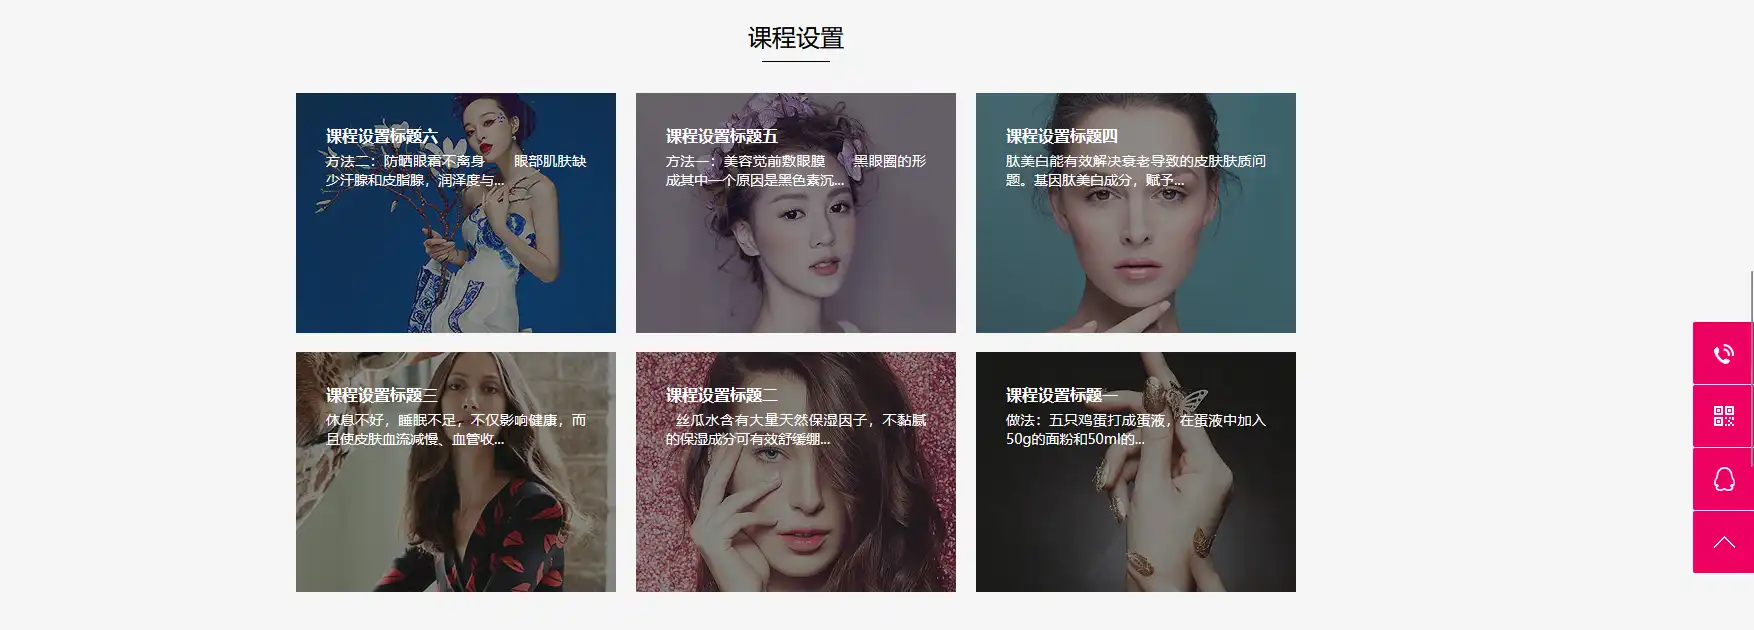 美容美发化妆造型类eyoucms网站模板